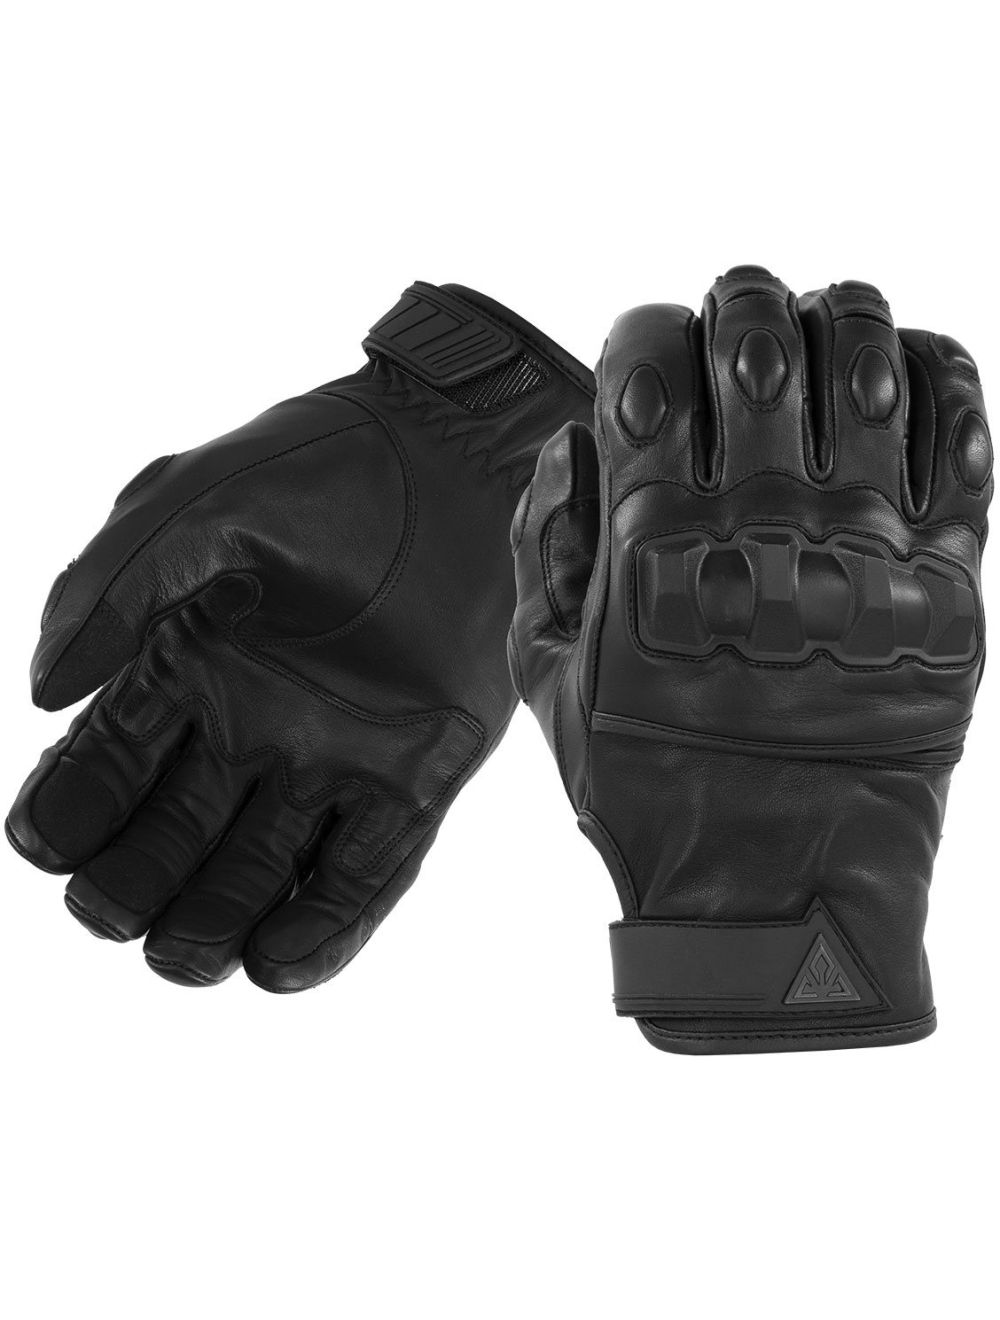 Phenom 6 Hard Knuckle Riot Control Gloves